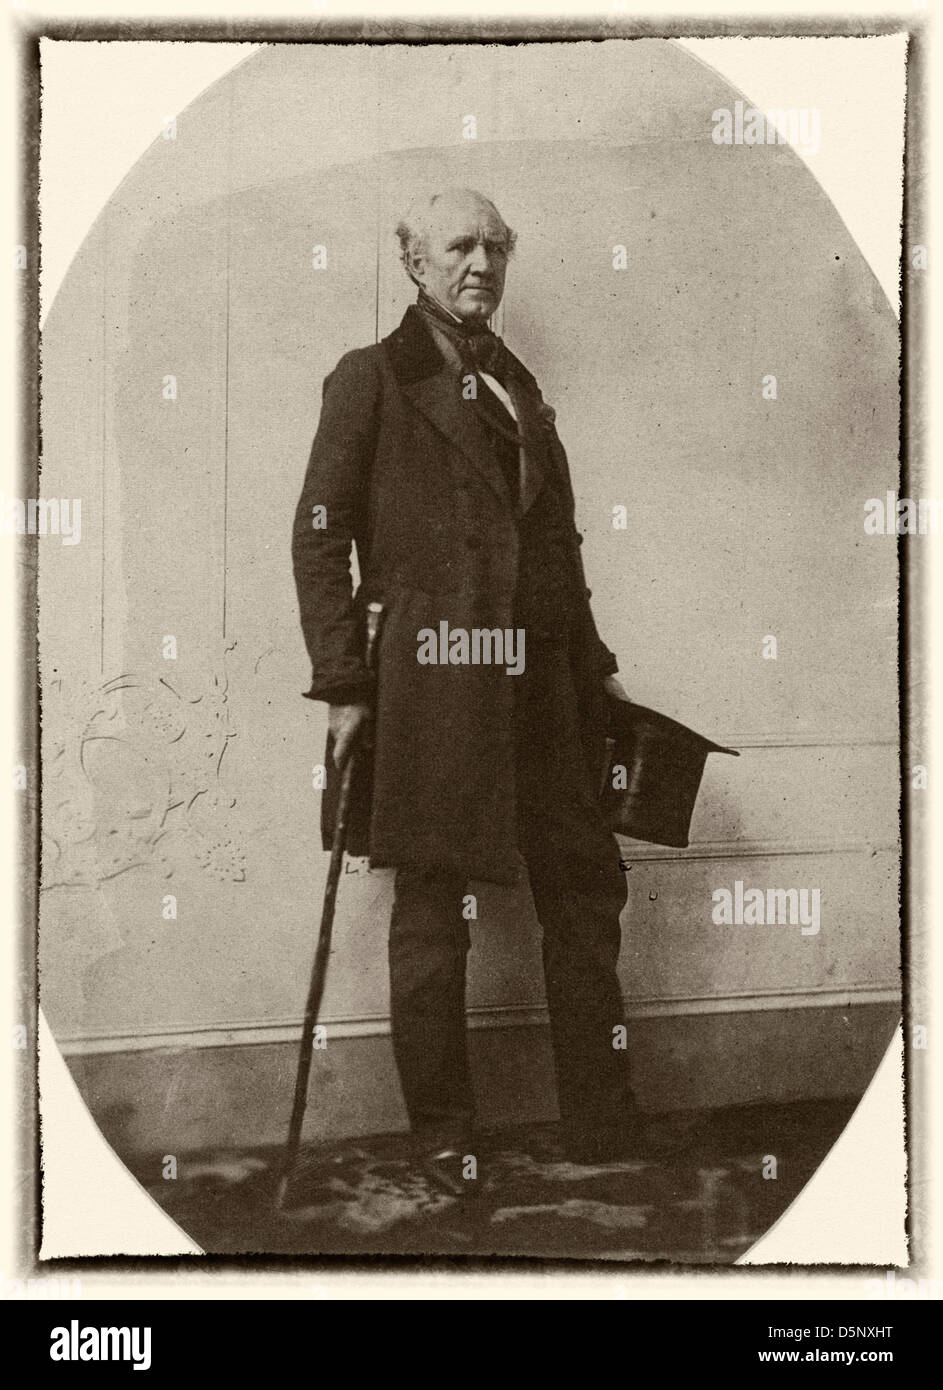 Sam Houston, portrait en pied, faisant face à droite, vers 1857 Banque D'Images